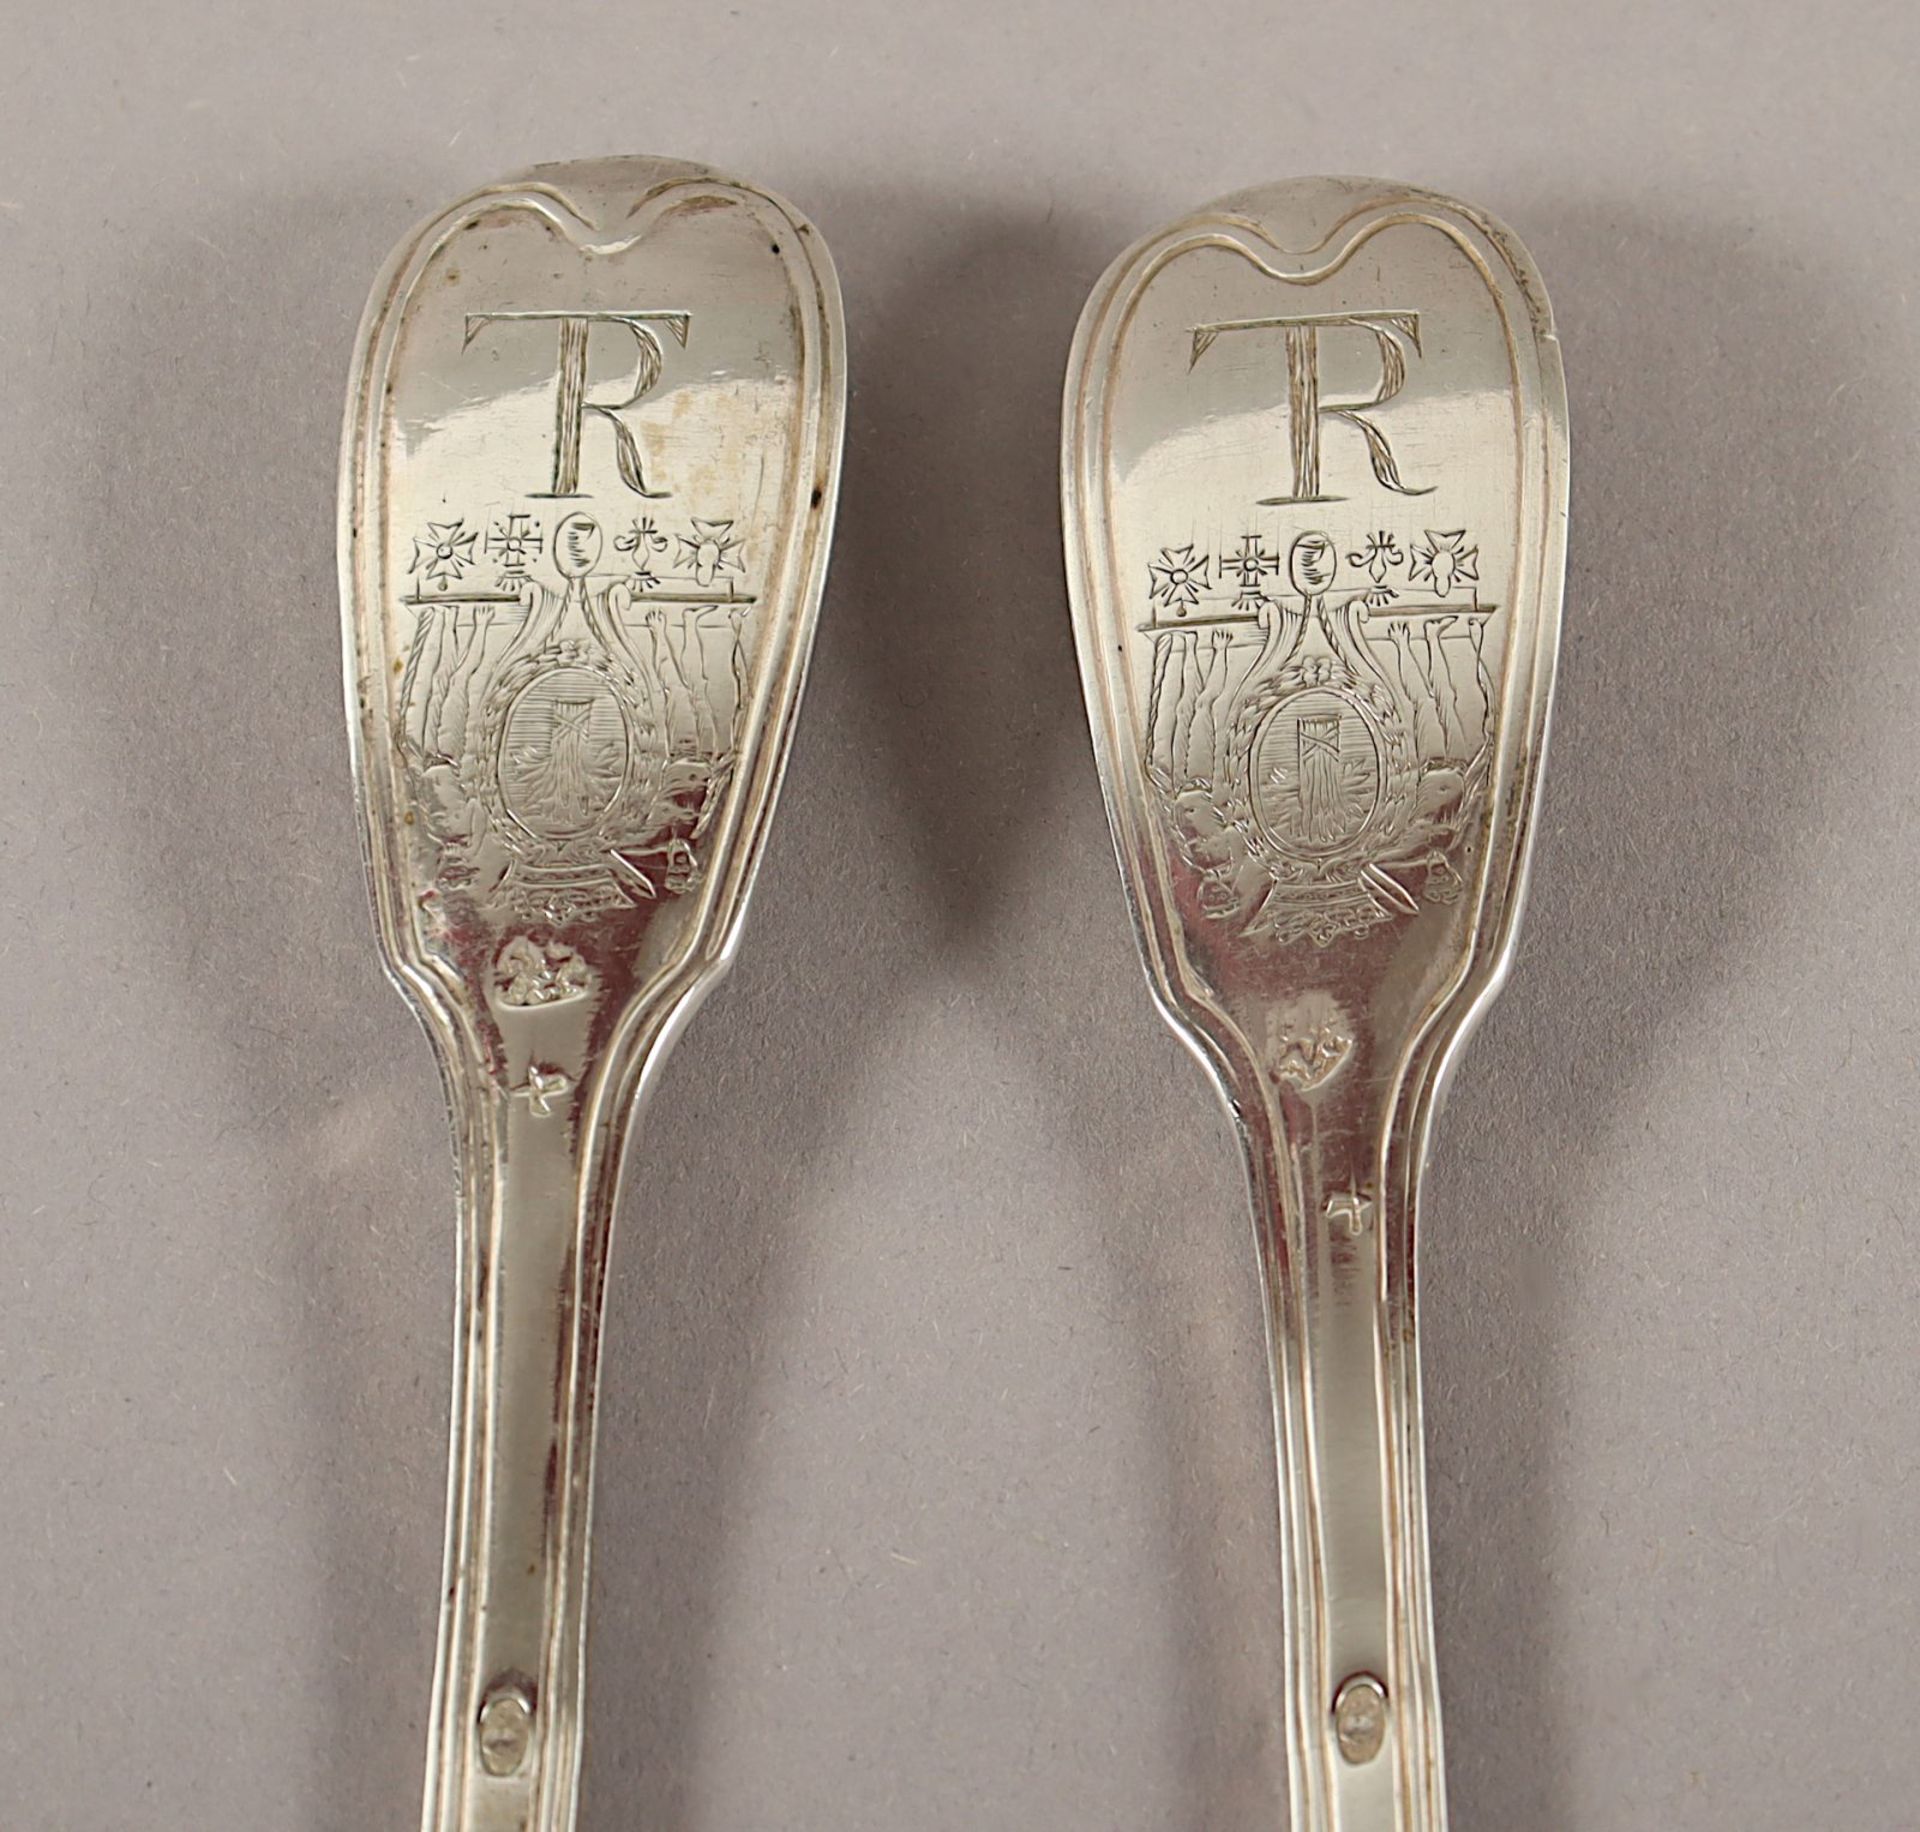 Zwei Löffel, Silber, mit Wappen, PARIS - Image 2 of 2